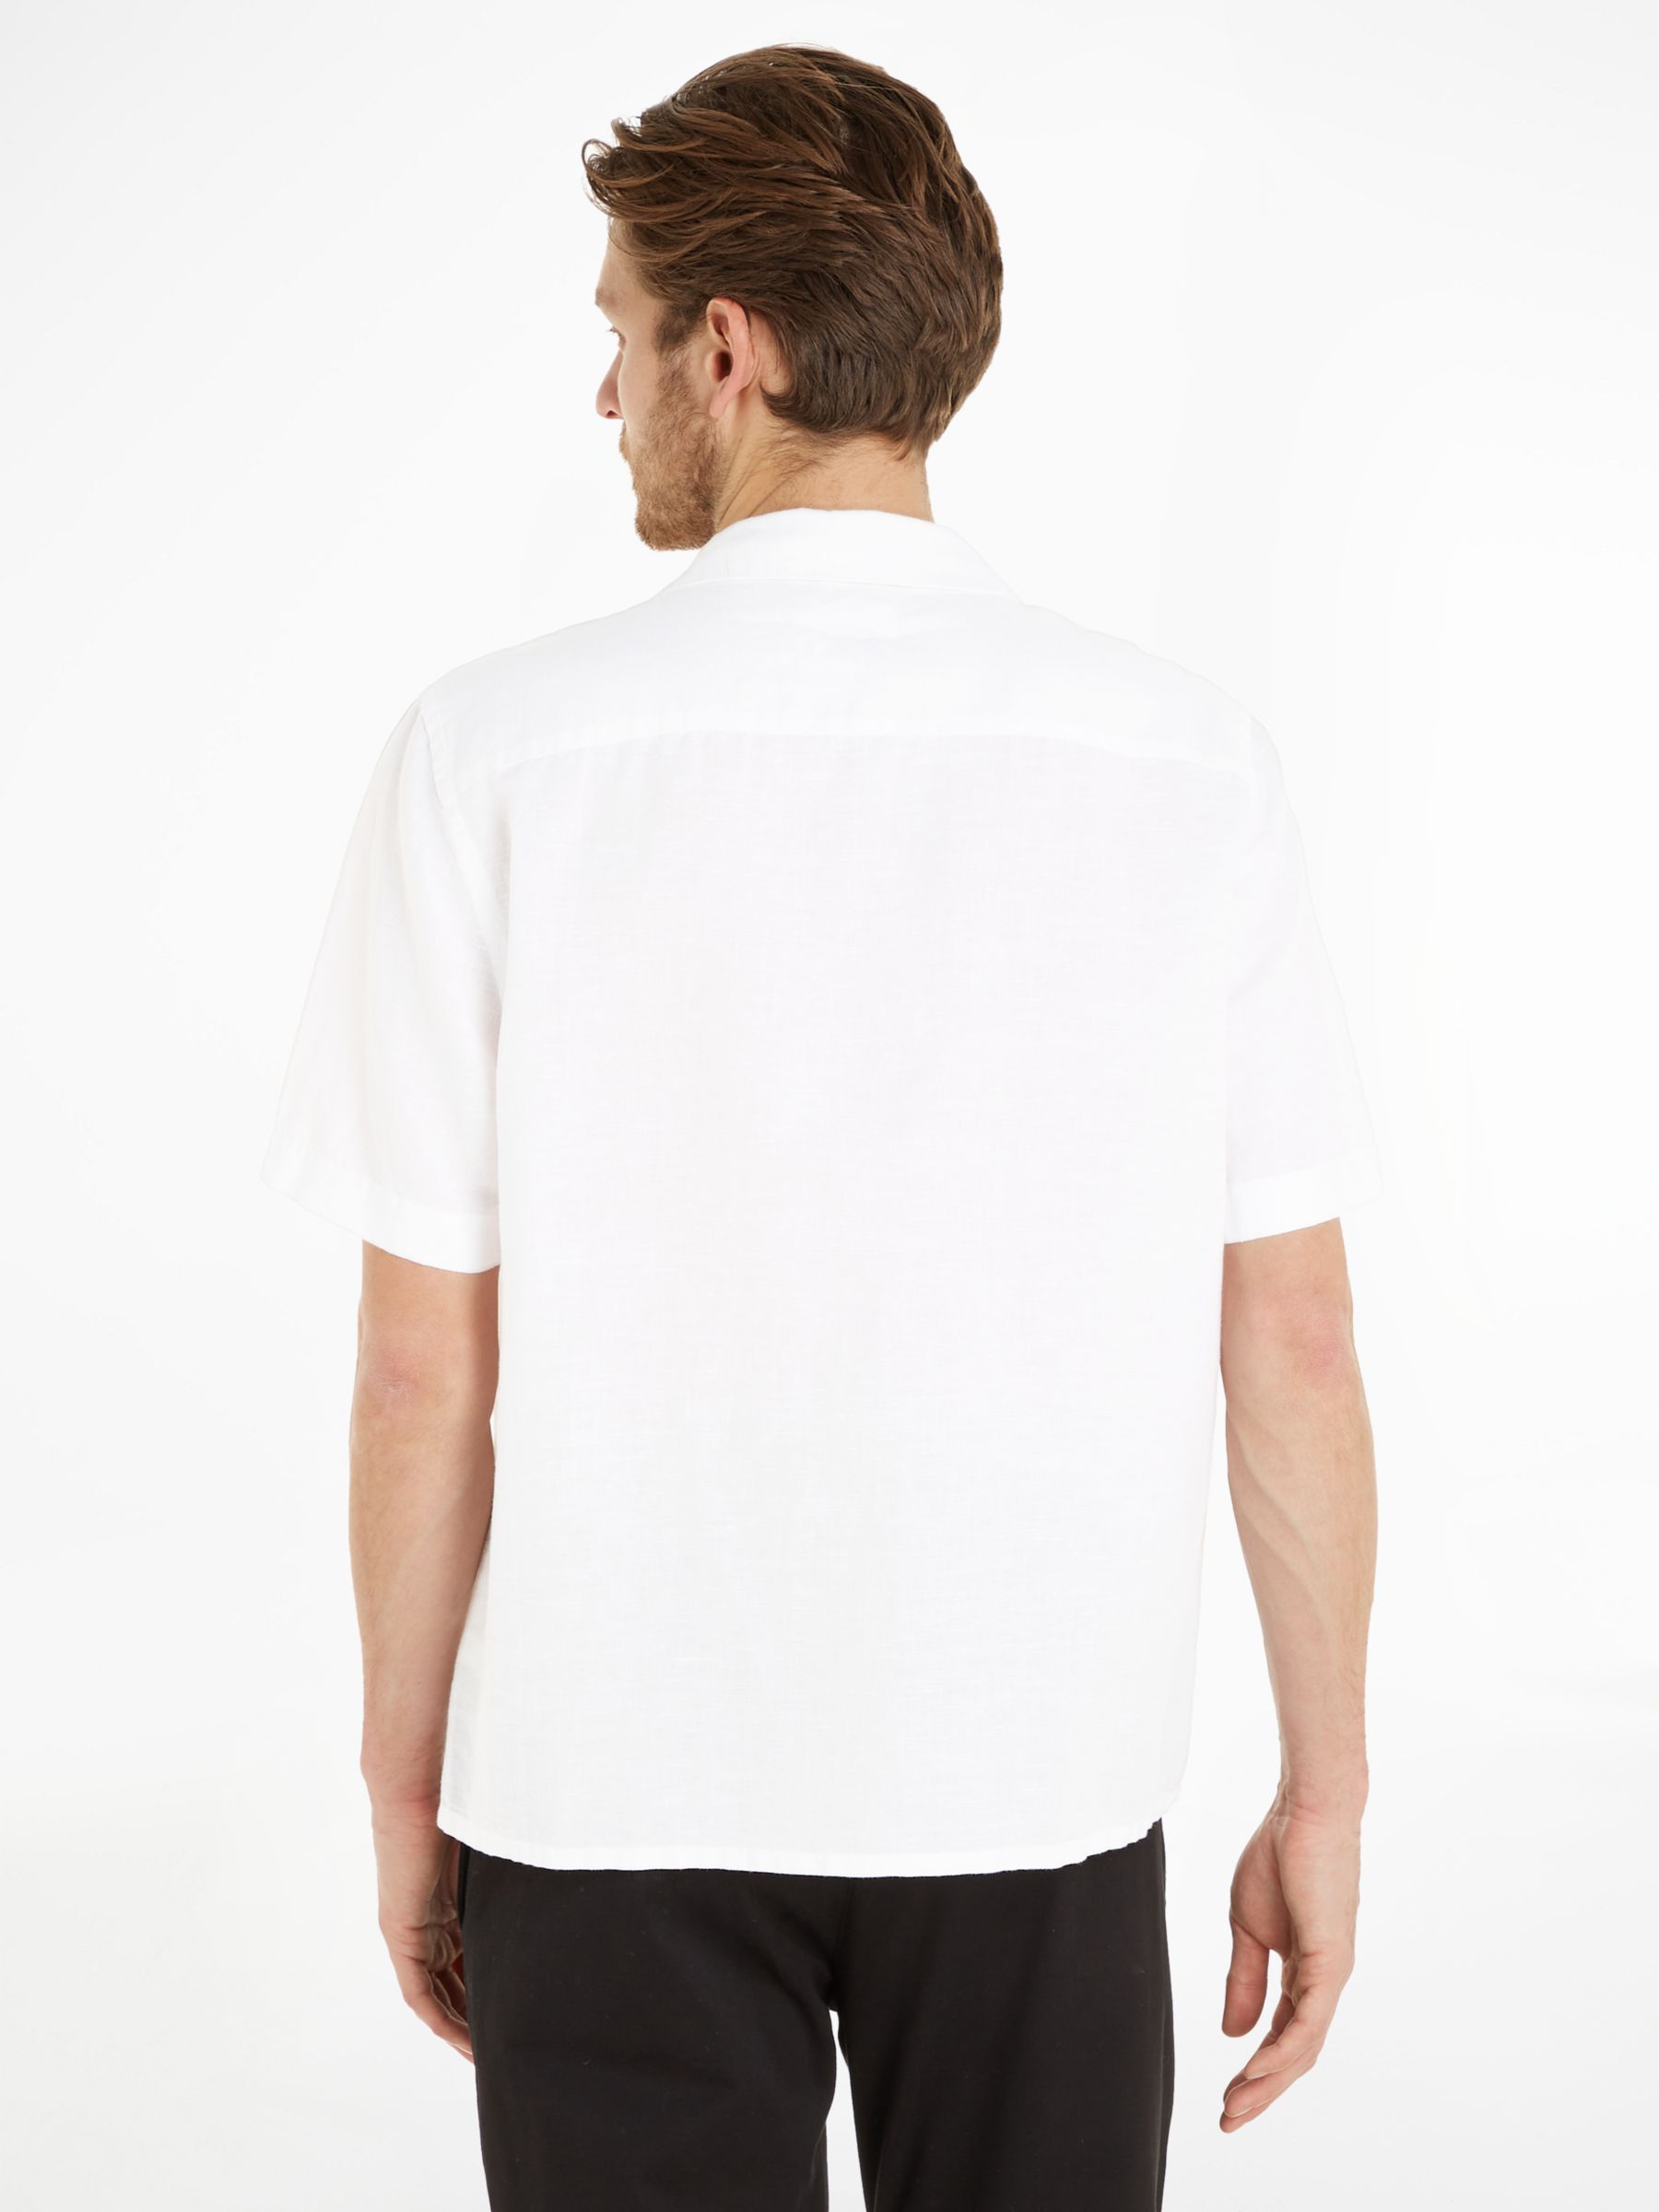 Calvin Klein Linen Blend Cuban Shirt, Bright White, L